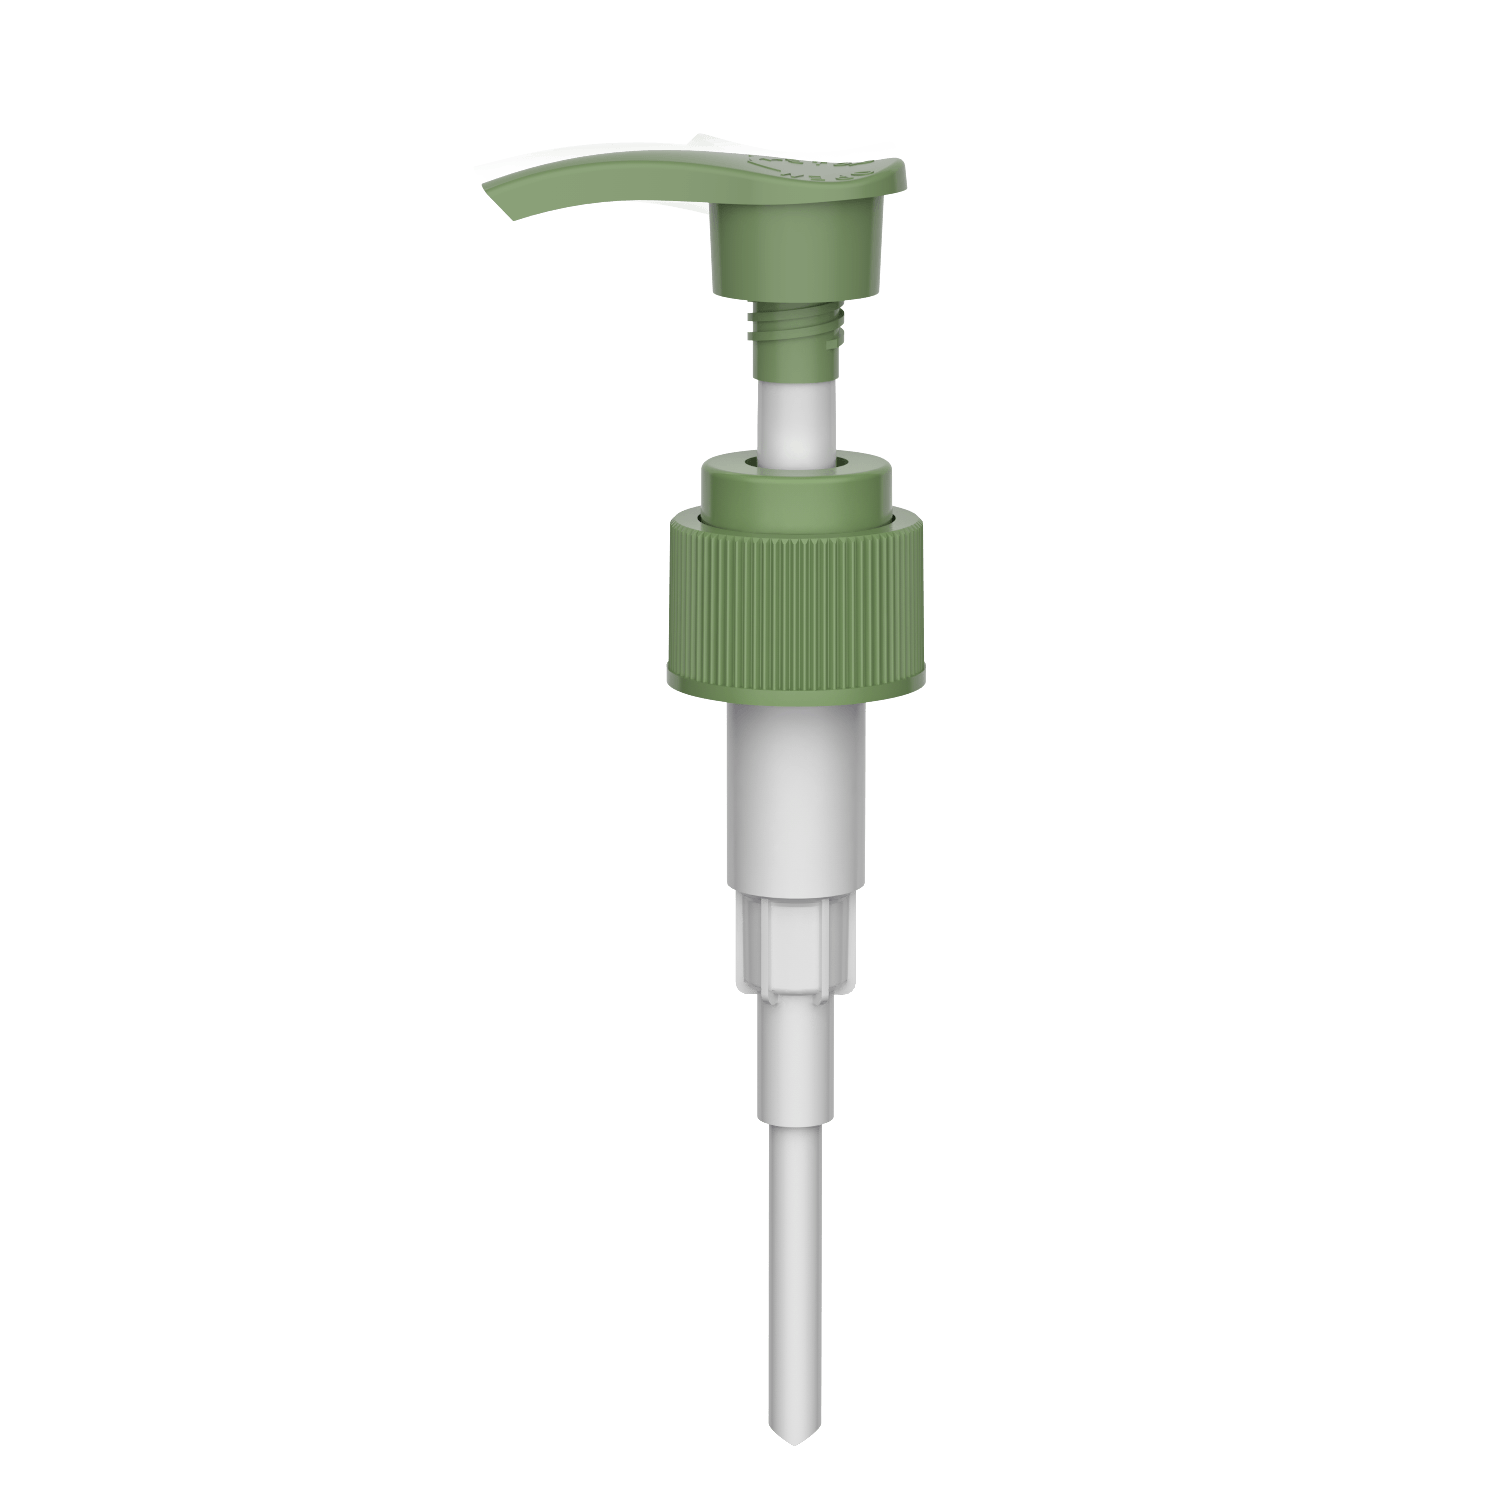 HD-606E 24/410 pompa per sapone per le mani a vite con bloccaggio dispenser per shampoo 2.0-2.2CC pompa per lozione